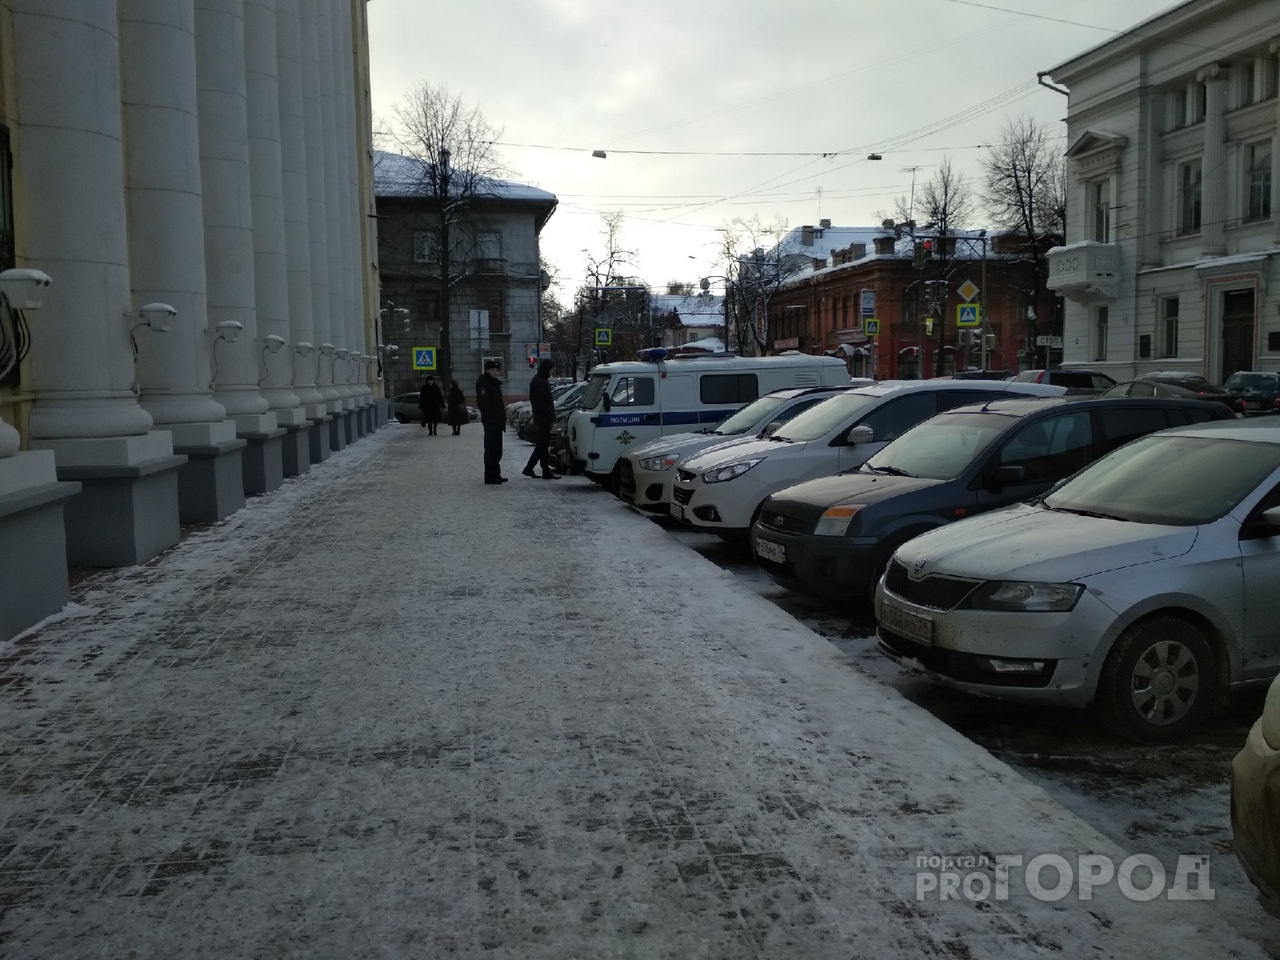 Разбирал на запчасти: серийного угонщика авто поймали в Ярославле